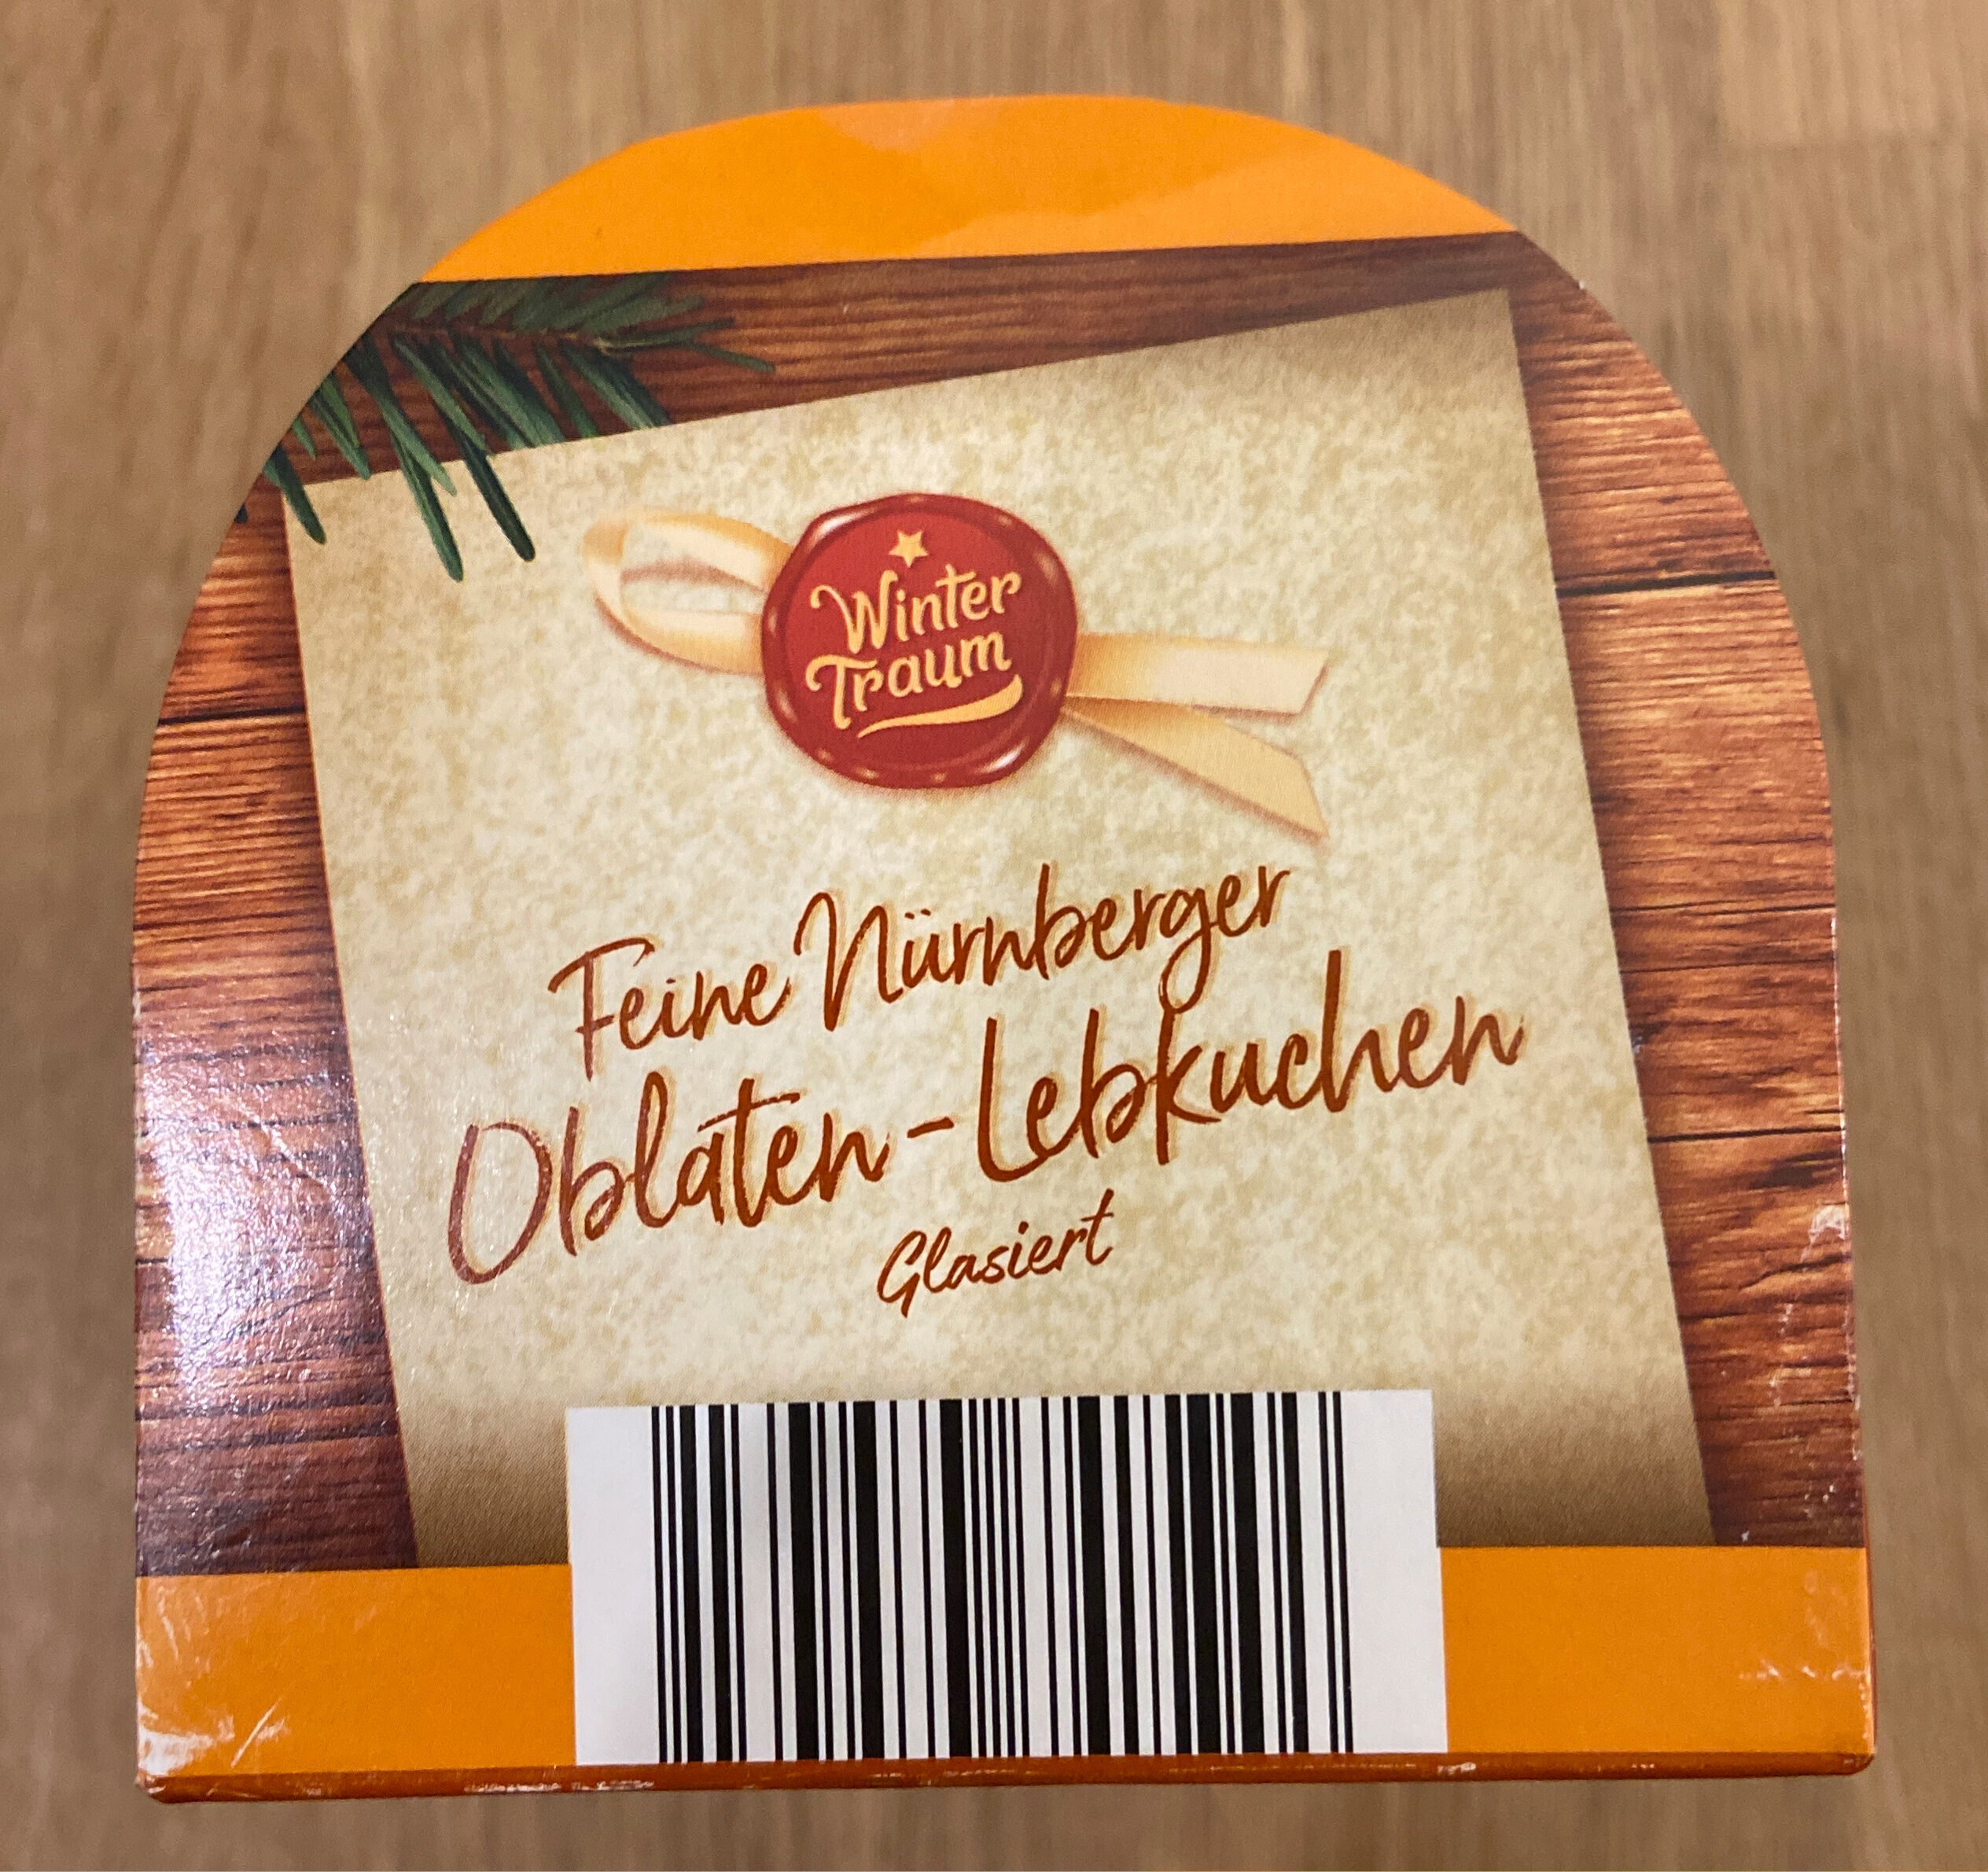 Nürnberger Oblaten-Lebkuchen glasiert - Produkt